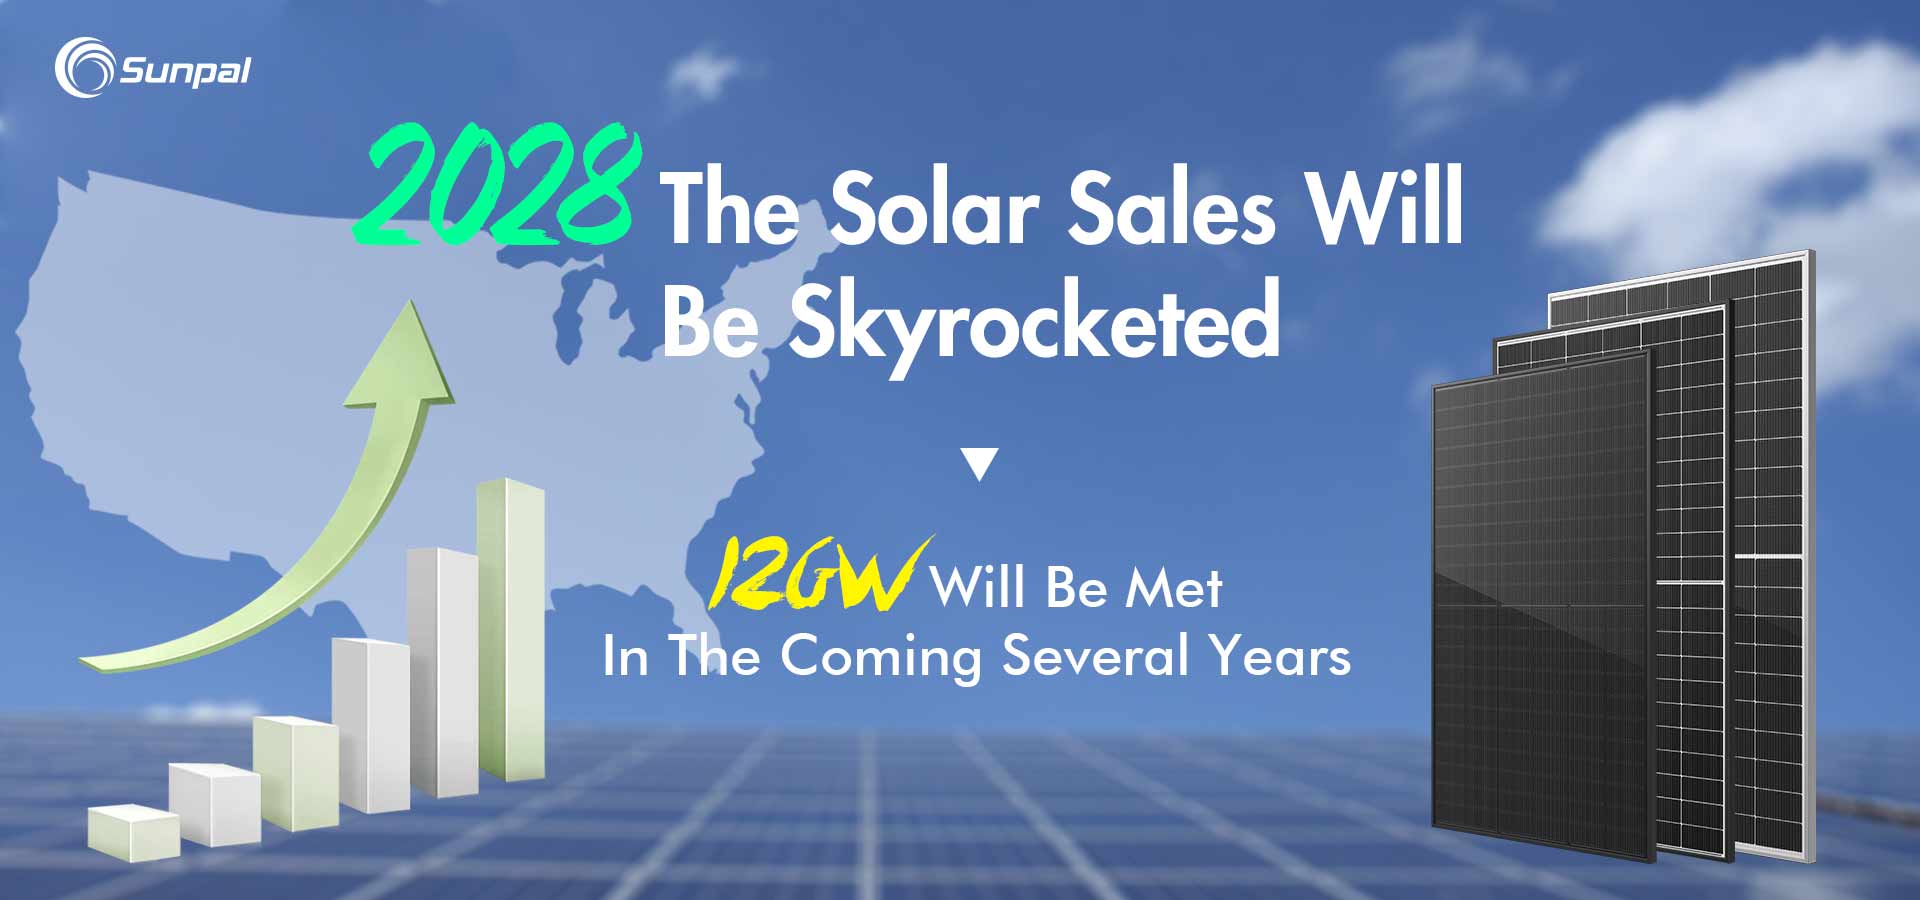 Kommerzielle Solarverkäufe werden explodieren, da der US-Markt bis 2028 14 GW erreicht